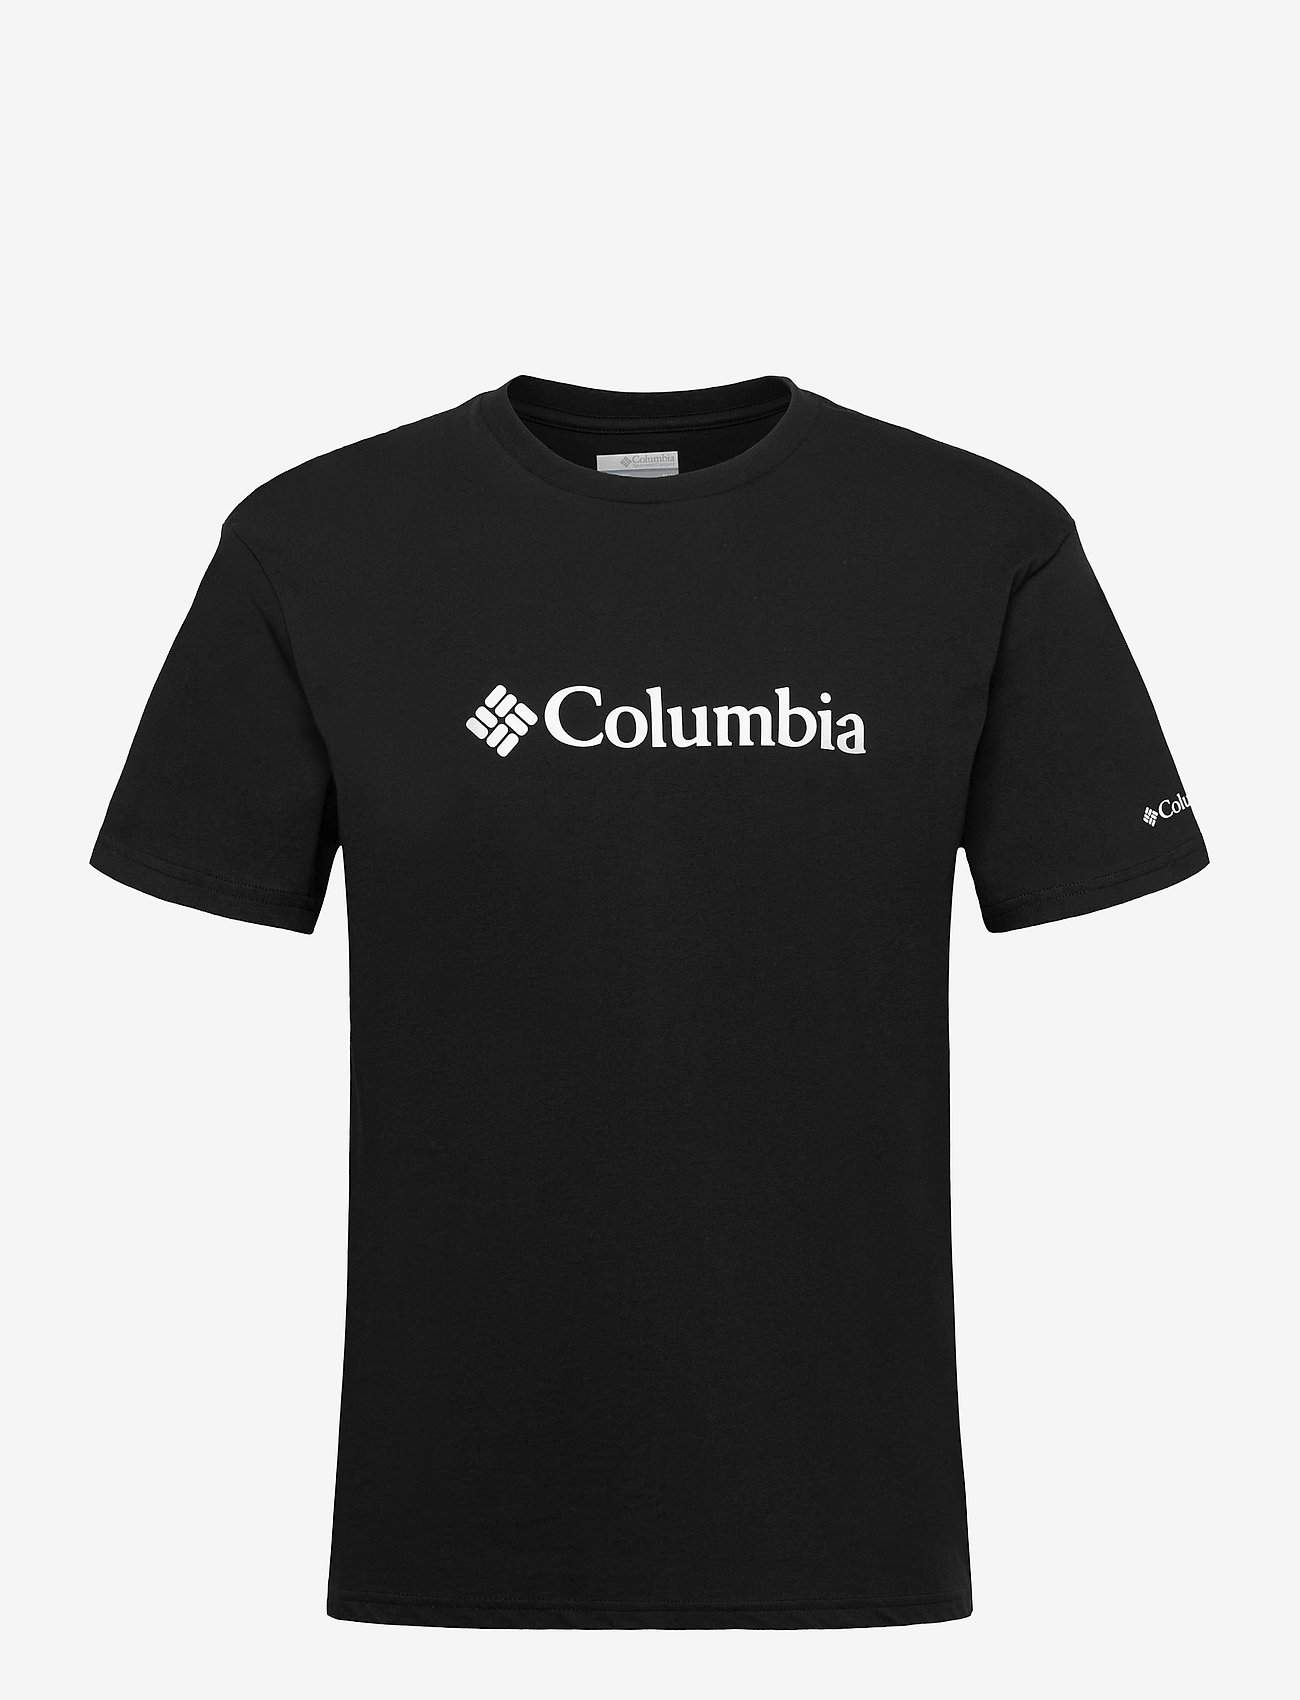 Columbia Sportswear - CSC Basic Logo Short Sleeve - zemākās cenas - black - 0